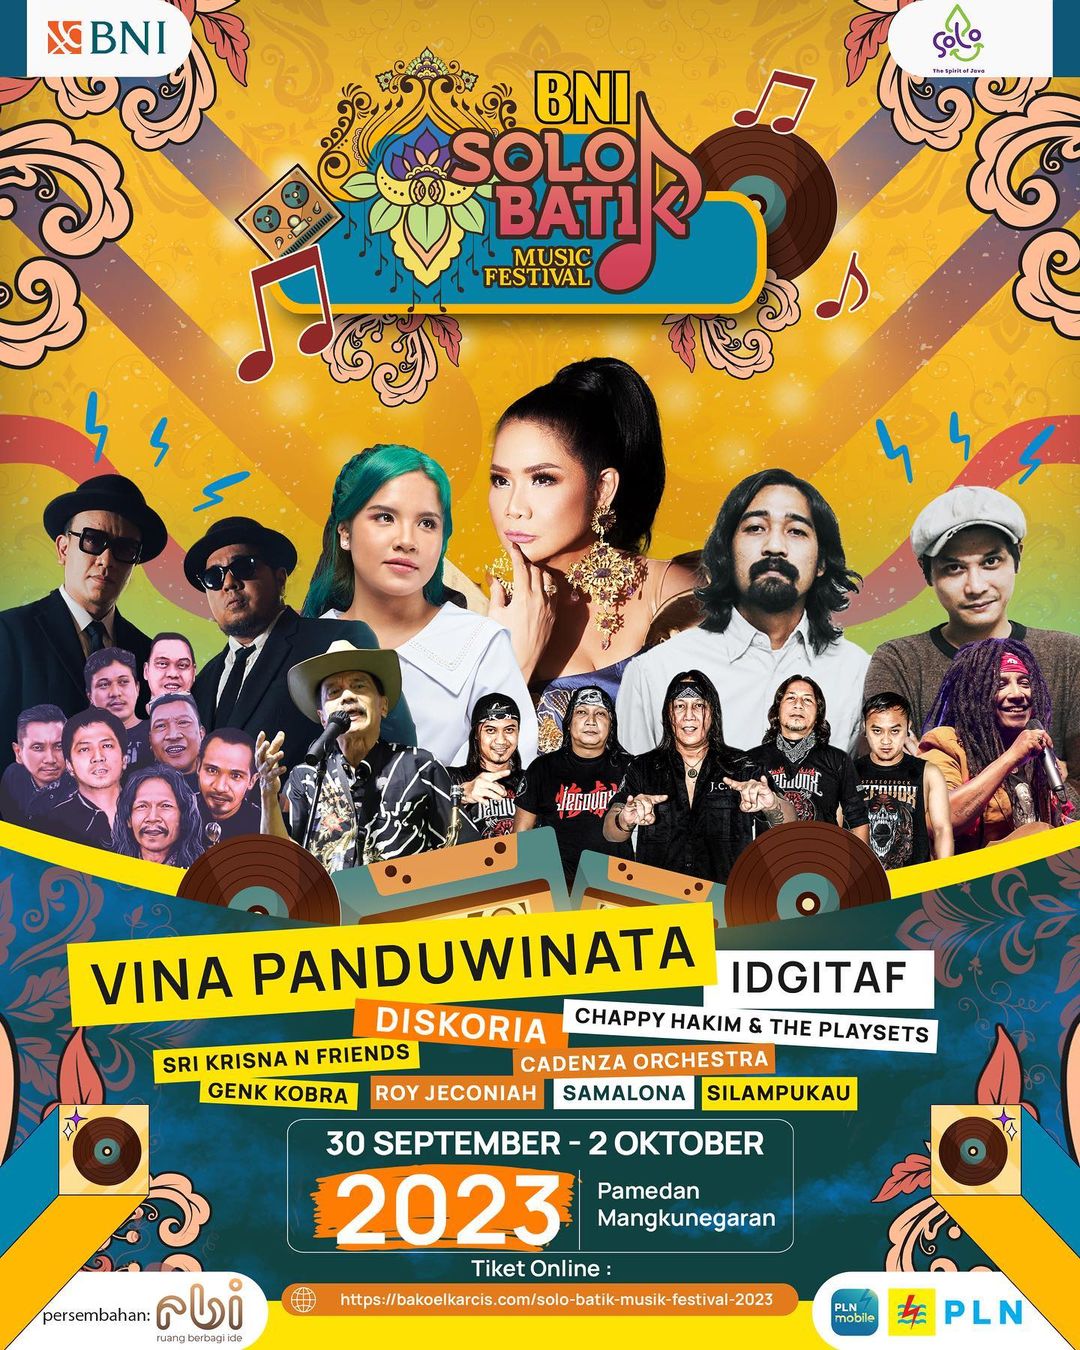 Jadwal dan tiket Solo Batik Musik Festival